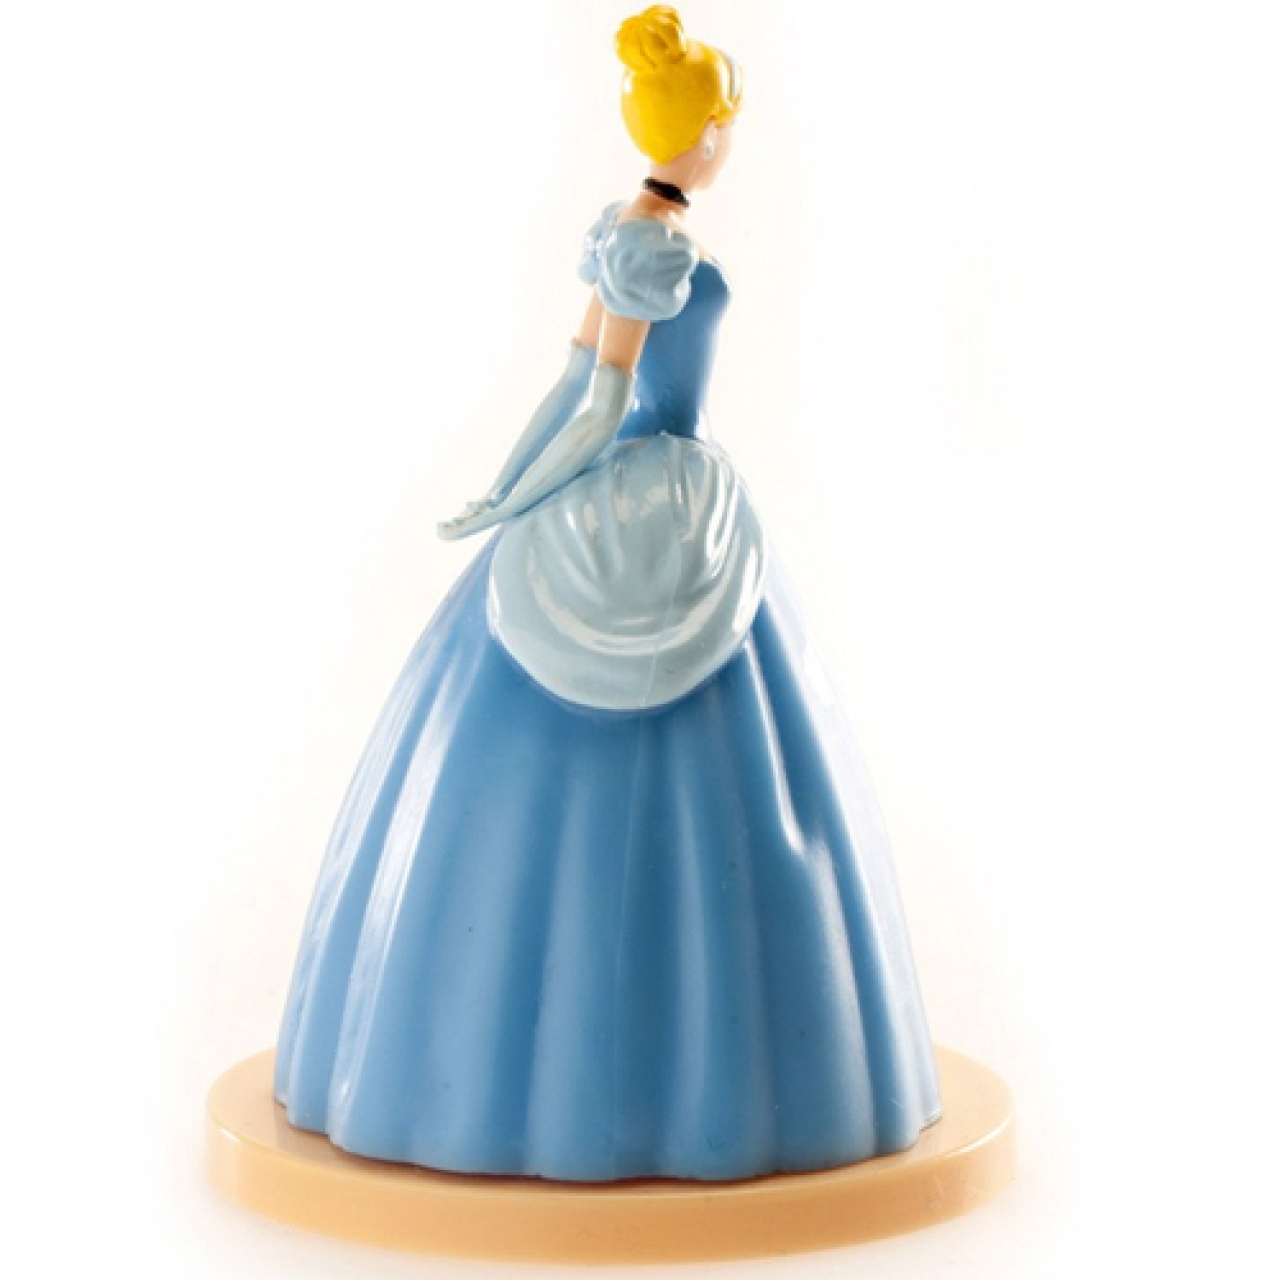 Tortenfigur, Prinzessin Cinderella  6 x 8,5 cm